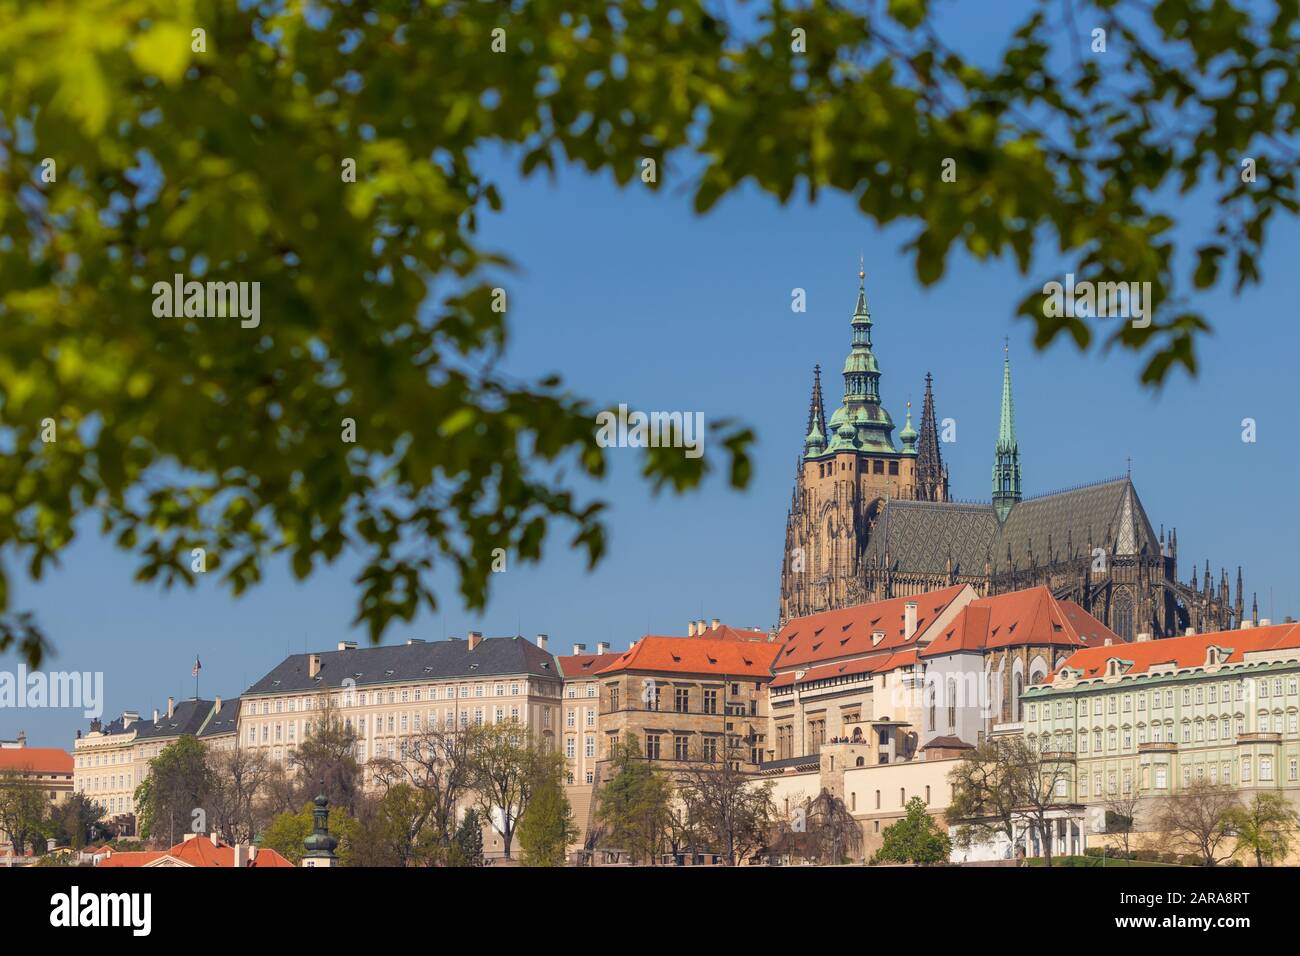 Château de Prague vu de la Vltava rivière embankment, Prague, Bohême, République tchèque, Europe Banque D'Images